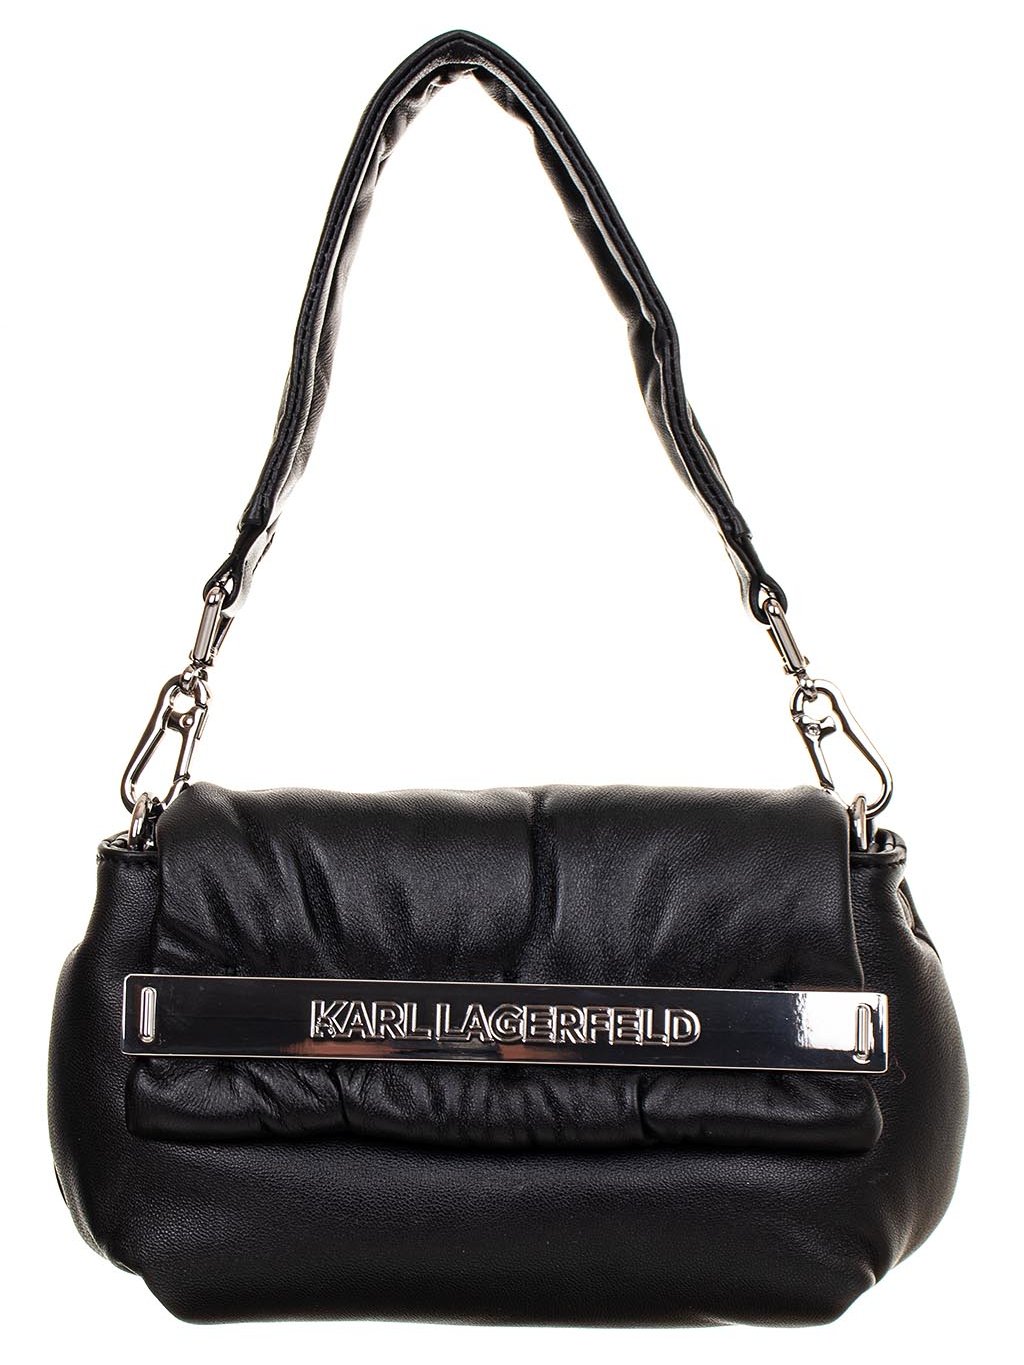 Karl Lagerfeld dámská kožená kabelka malá černá - FASHION AVENUE